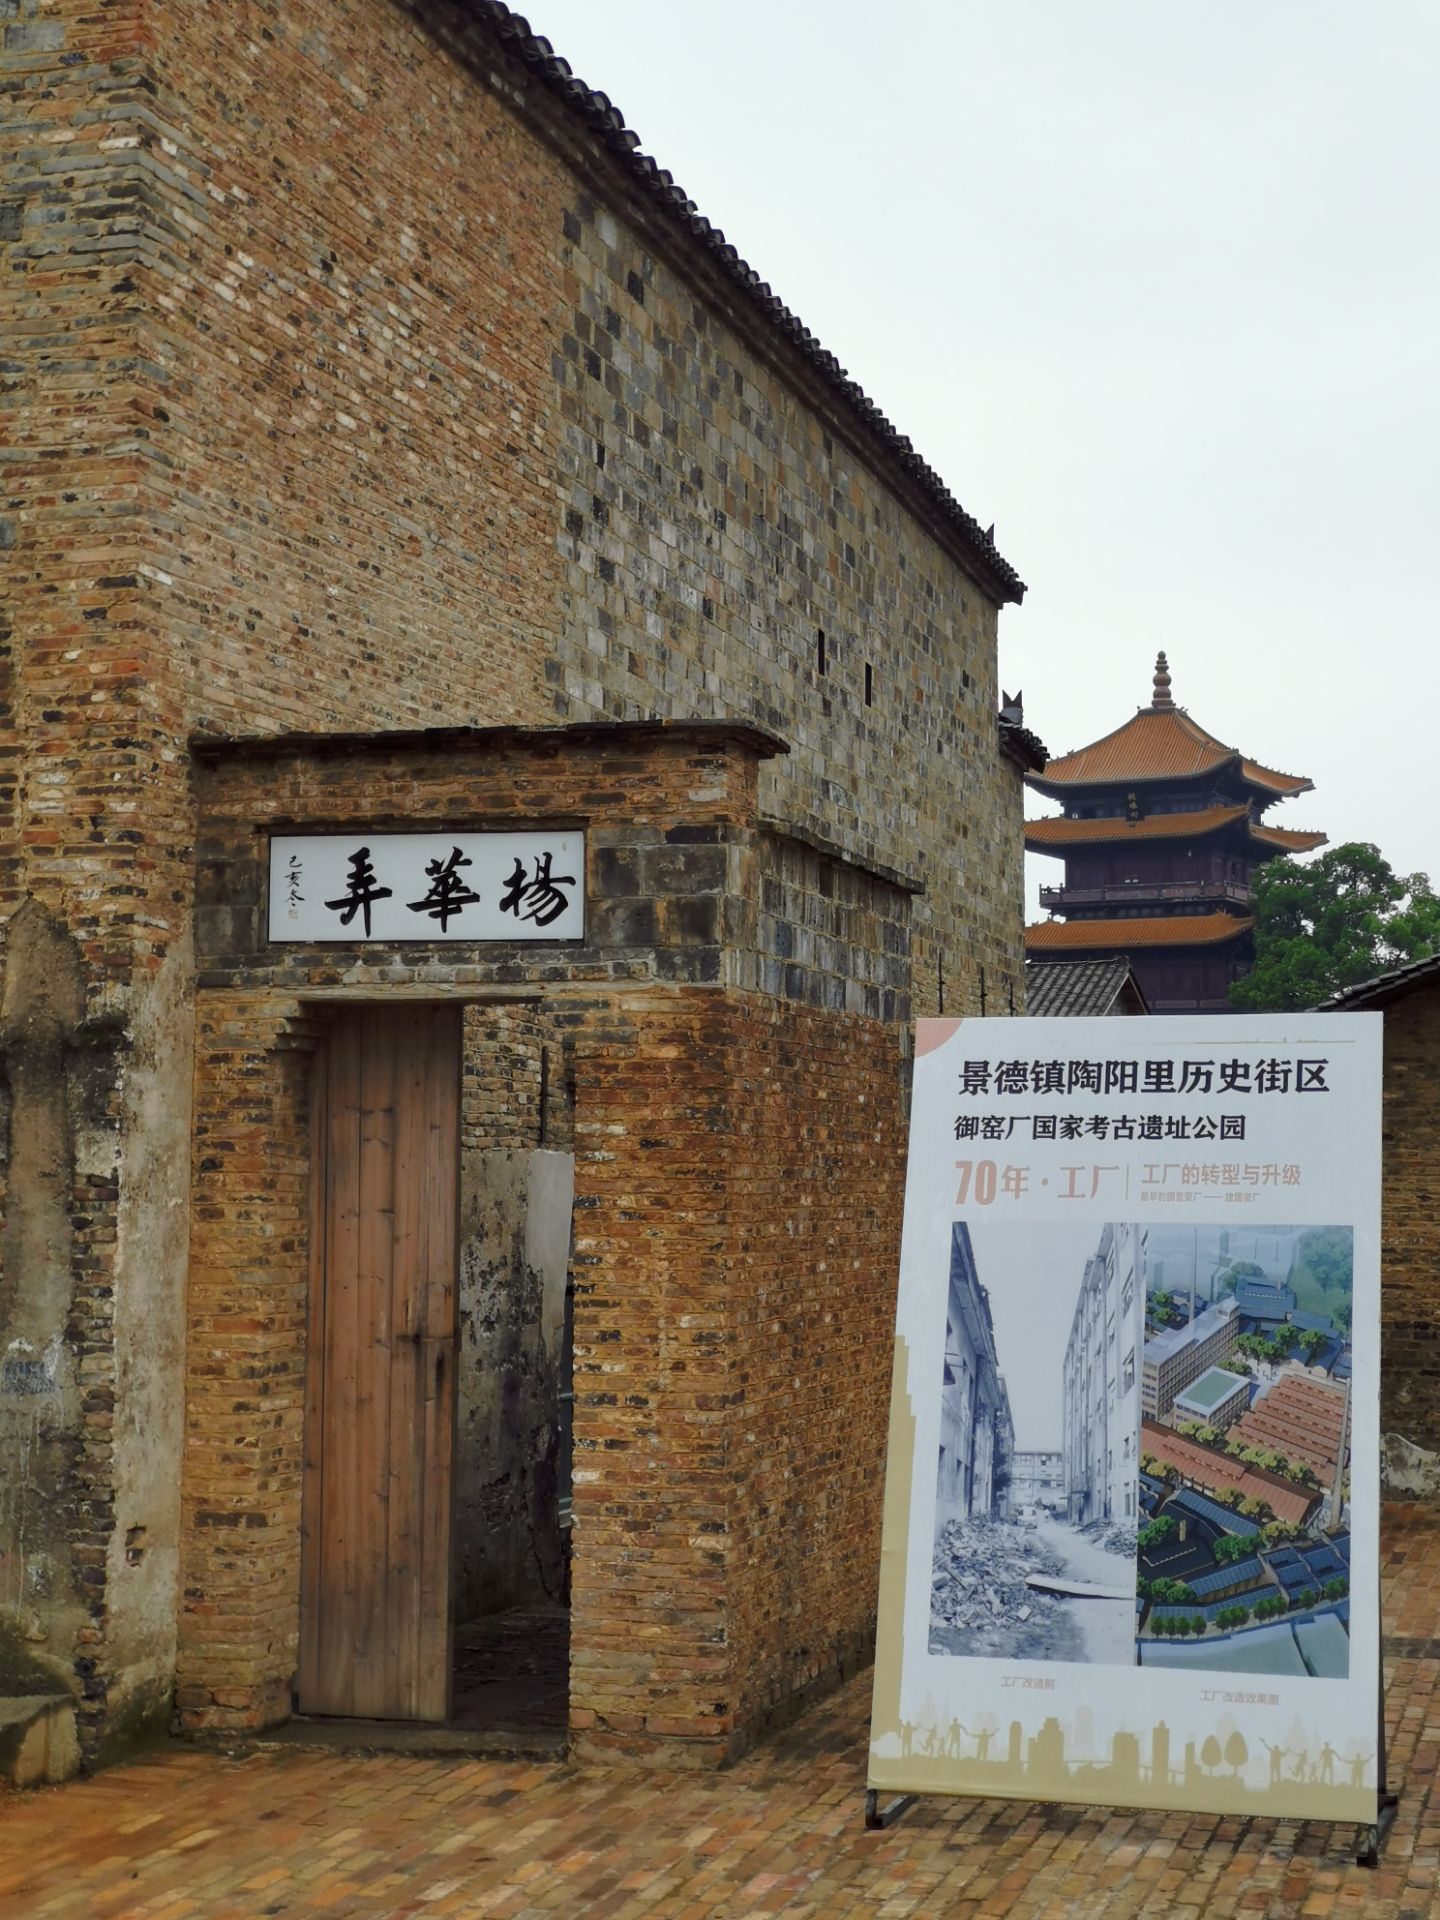 龙珠阁是御窑厂国家考古遗址公园内的制高点和视觉聚焦点